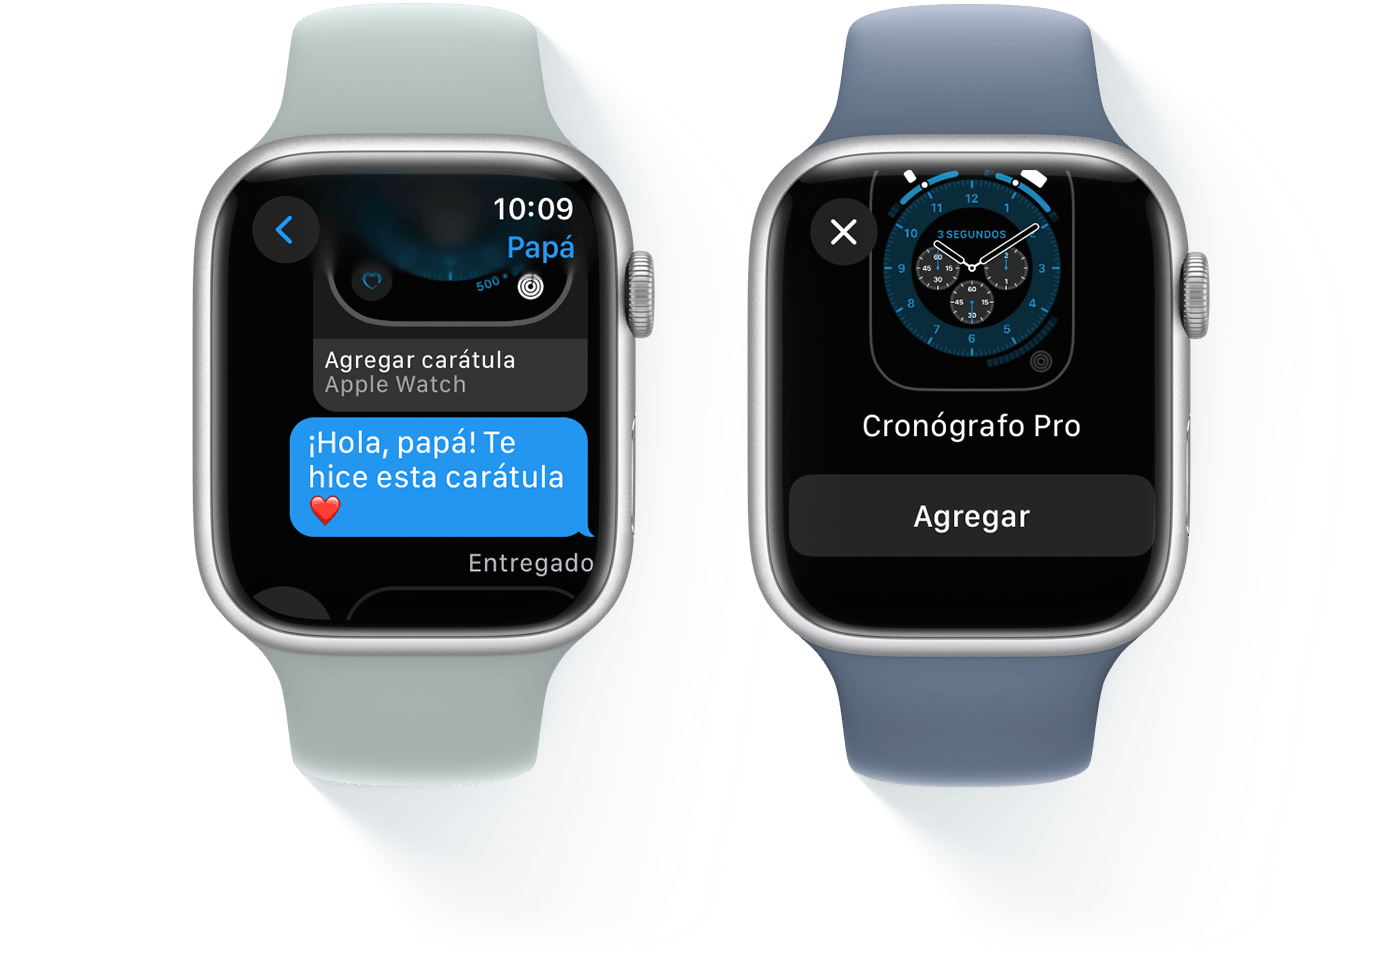 Dos Apple Watch, uno en el que se muestra una conversación por mensaje de texto y el otro en el que se muestra la carátula Cronógrafo Pro